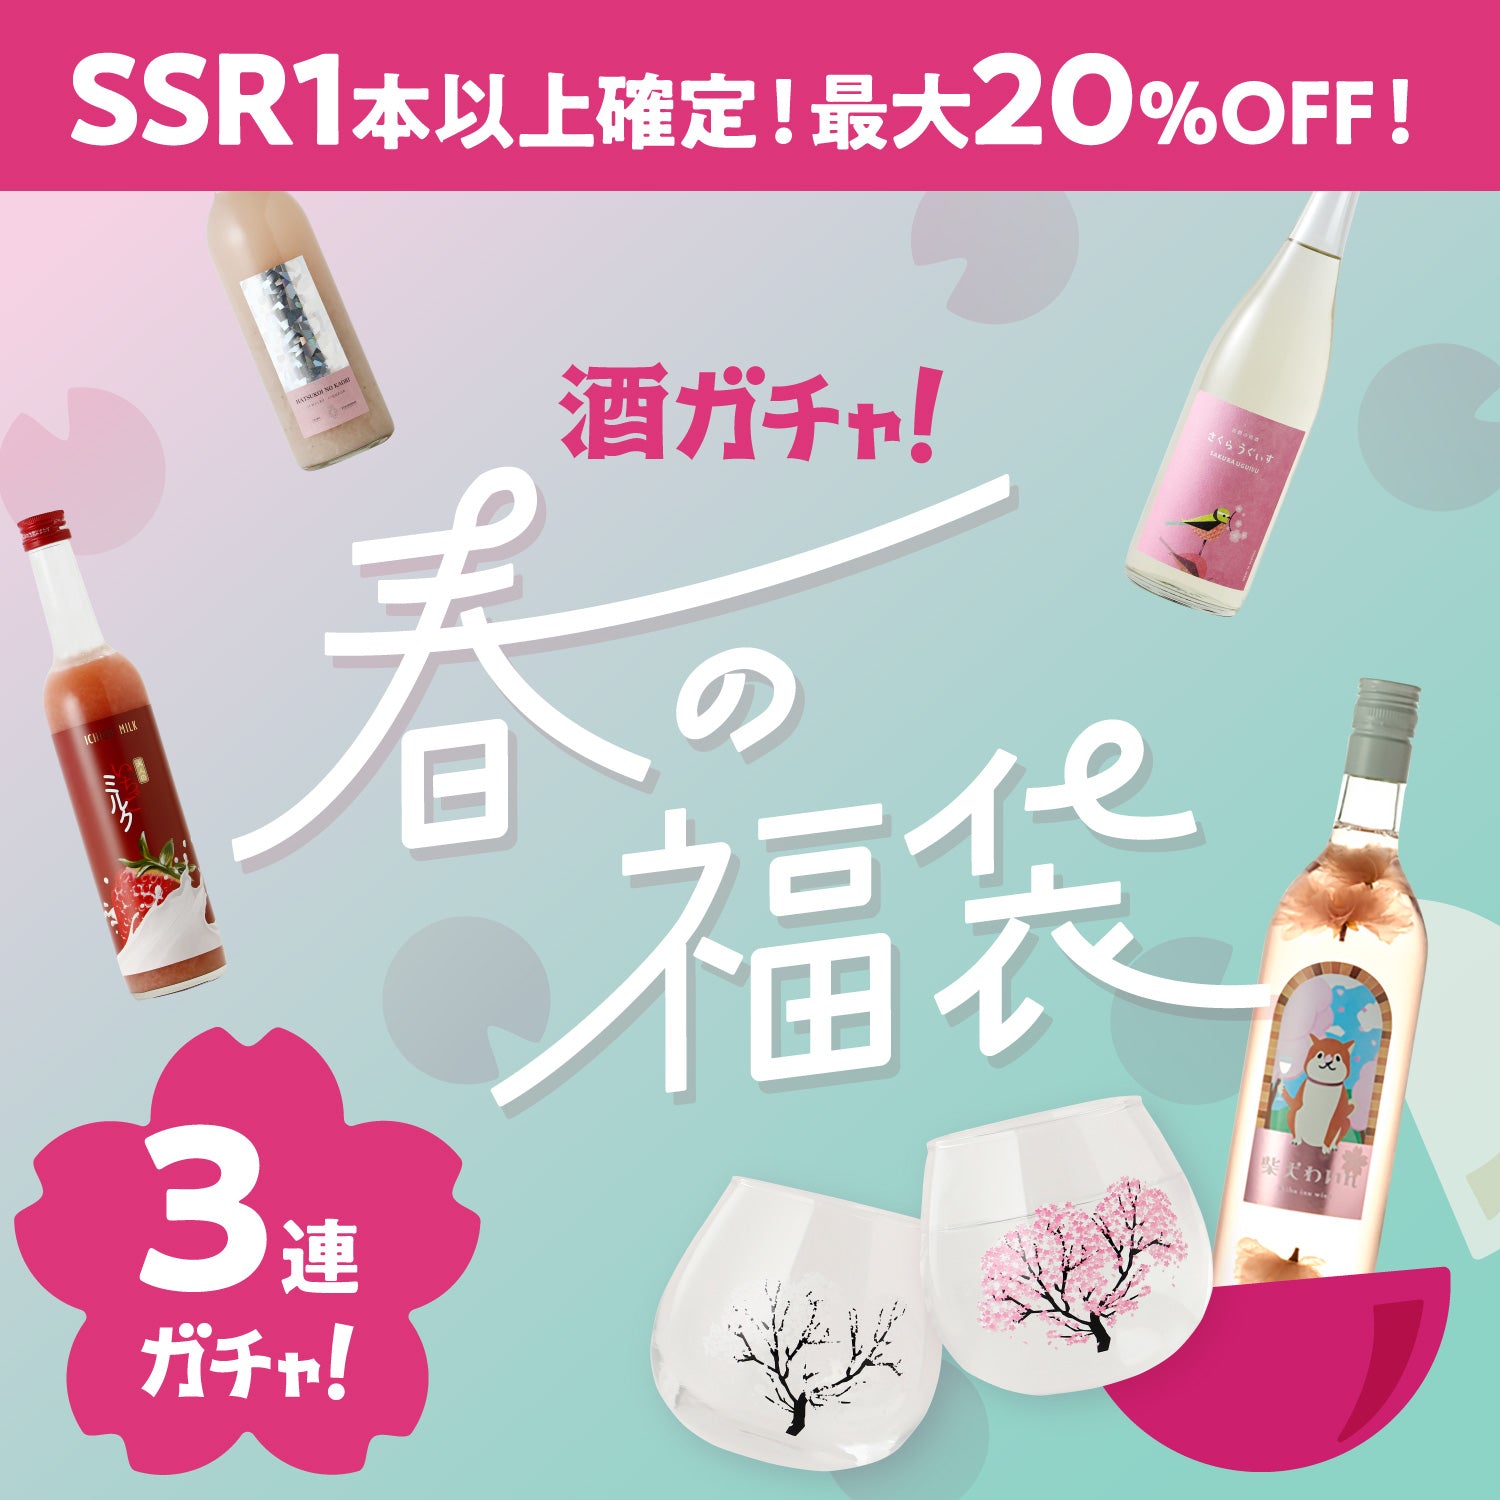 【限定50セット】桜のゆらゆらグラスセット付3連酒ガチャ